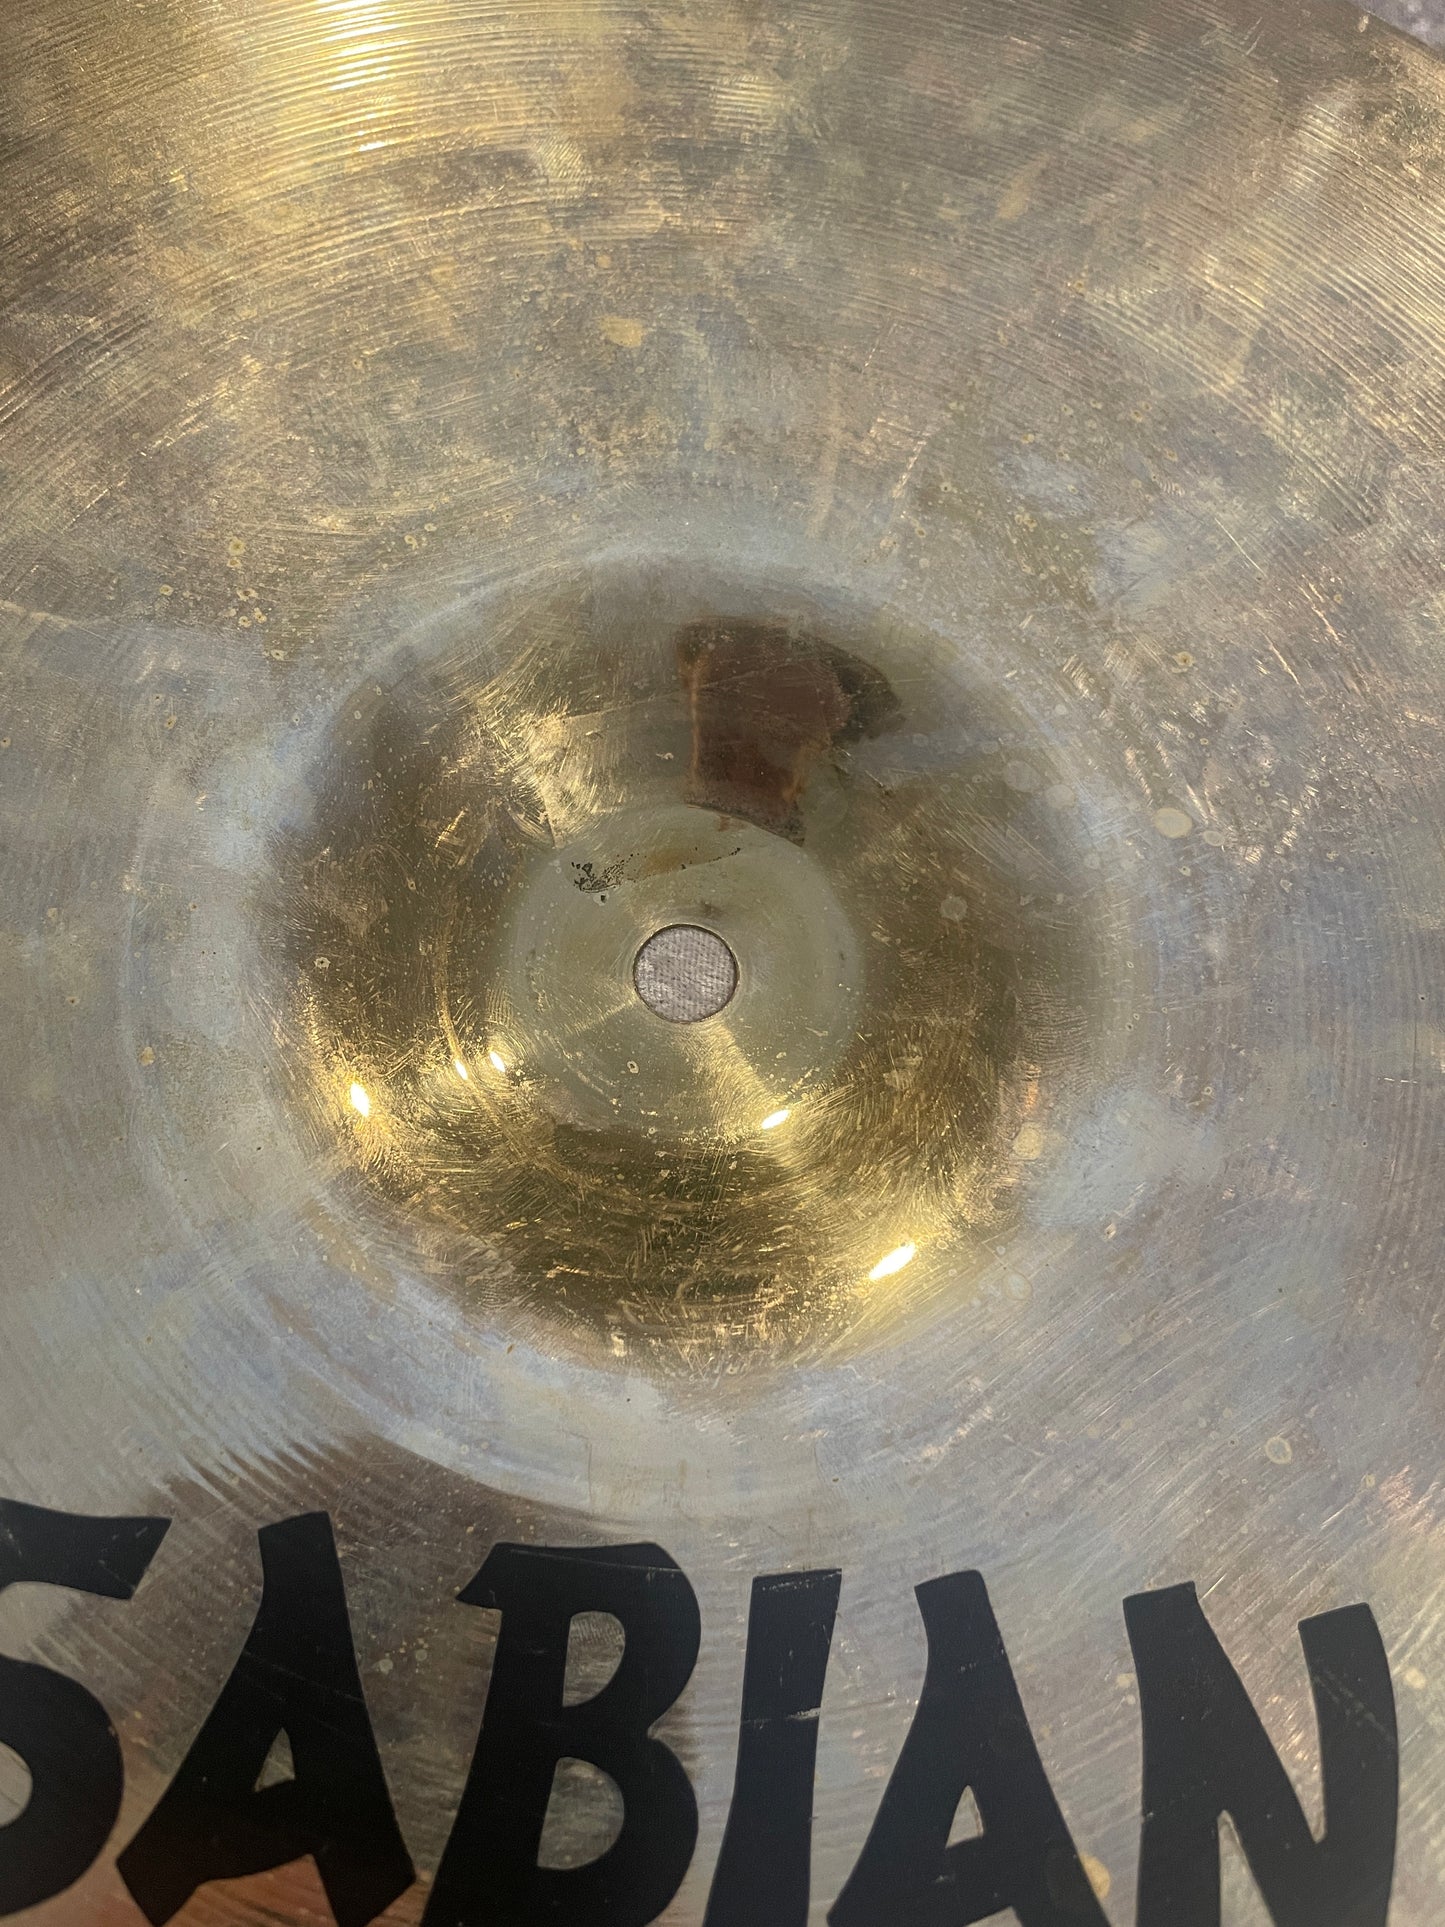 14" Sabian AAX Dark Crash Cymbal 710g